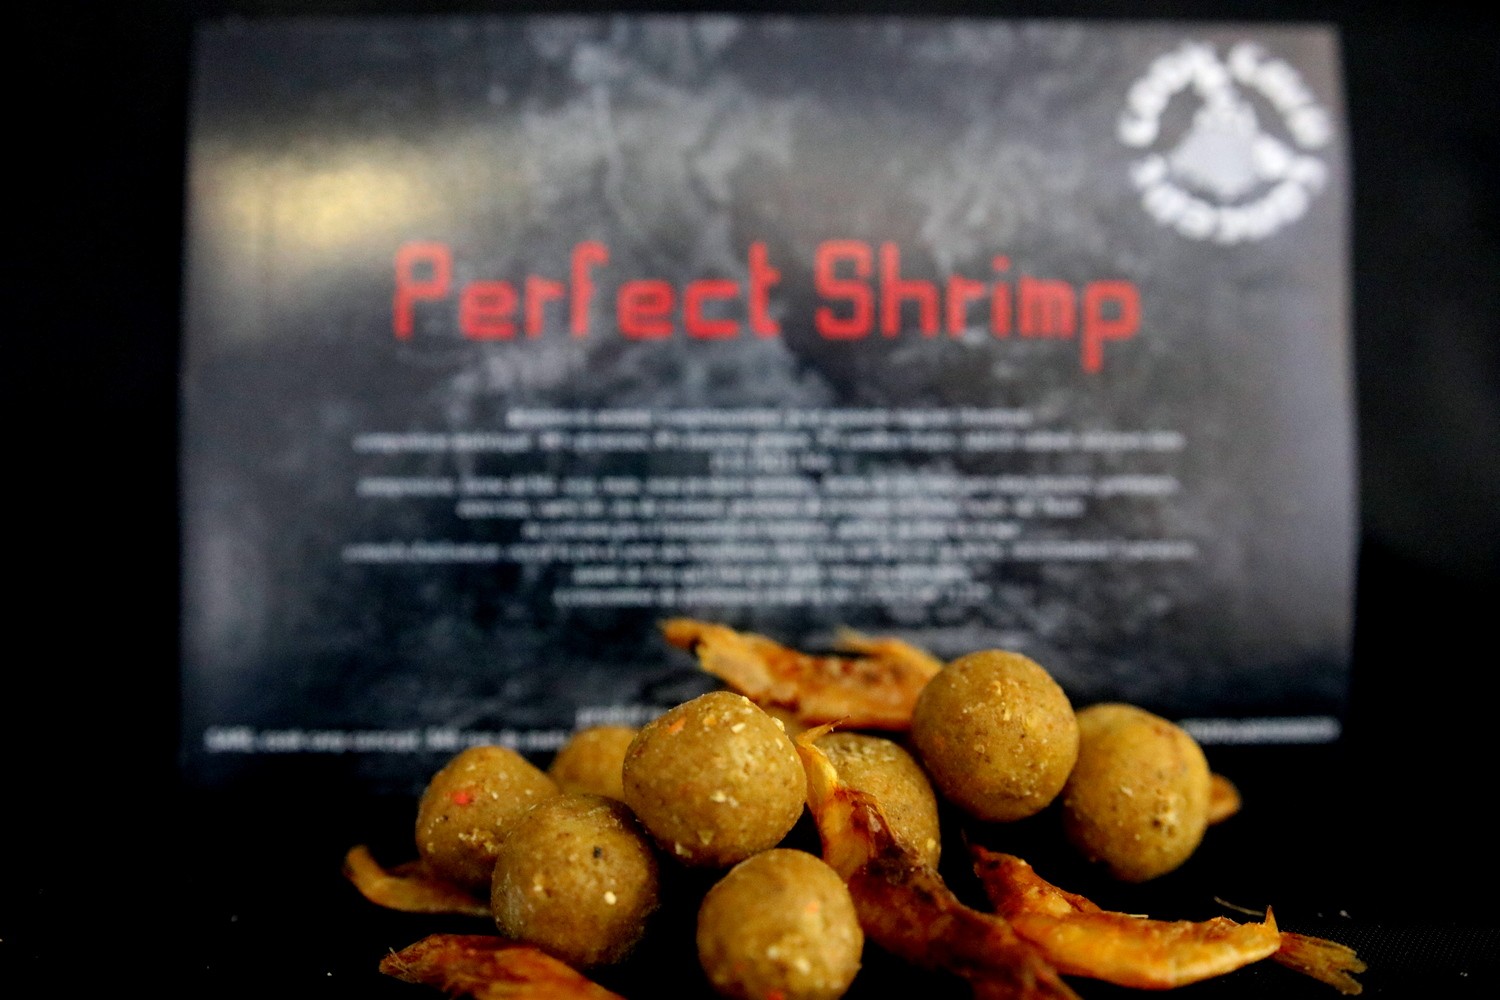 Bouillettes Perfect Shrimp...